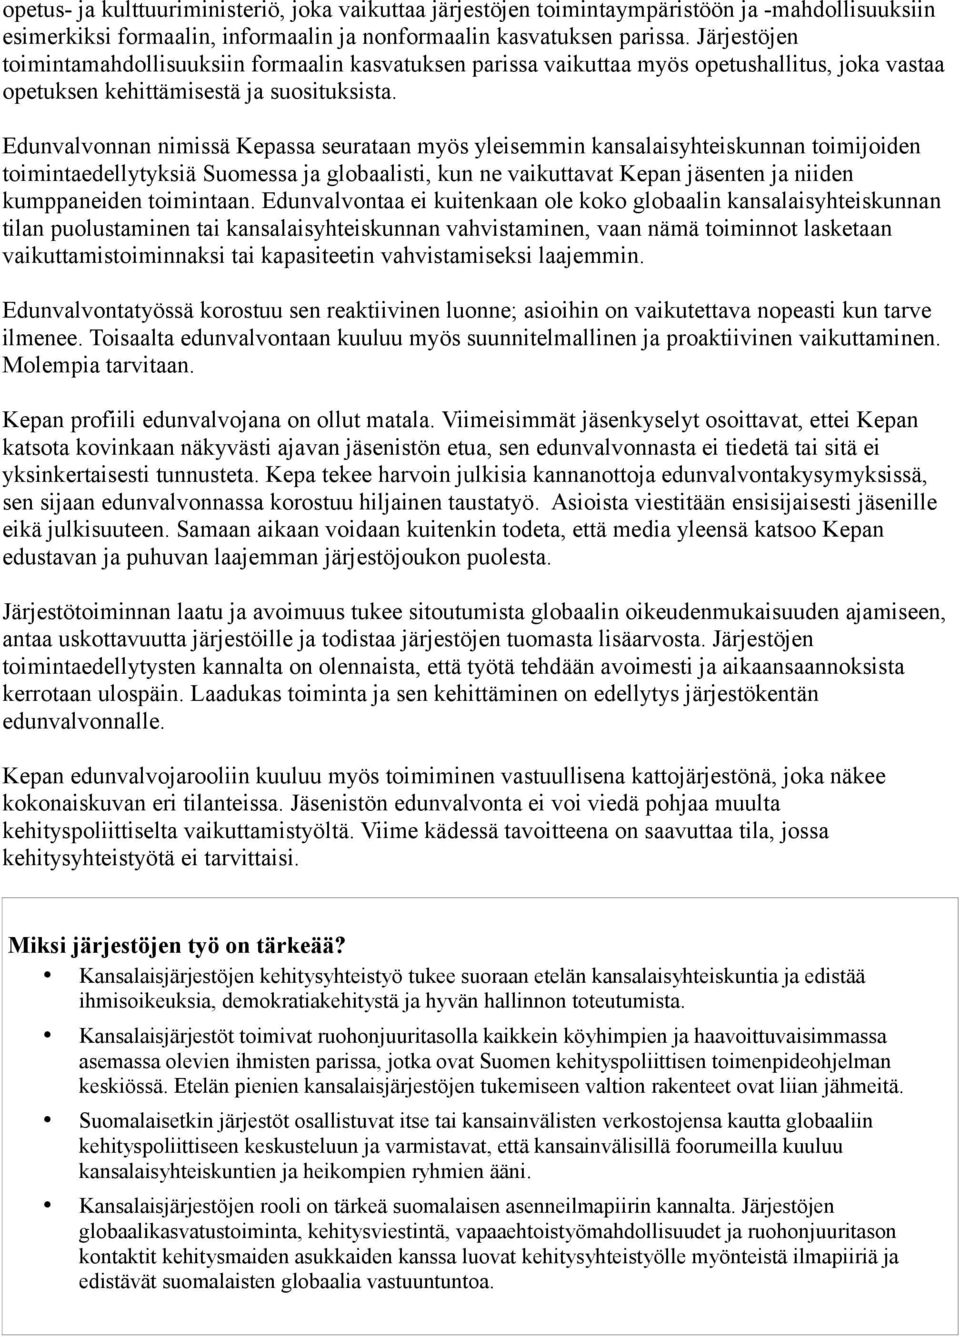 Edunvalvonnan nimissä Kepassa seurataan myös yleisemmin kansalaisyhteiskunnan toimijoiden toimintaedellytyksiä Suomessa ja globaalisti, kun ne vaikuttavat Kepan jäsenten ja niiden kumppaneiden